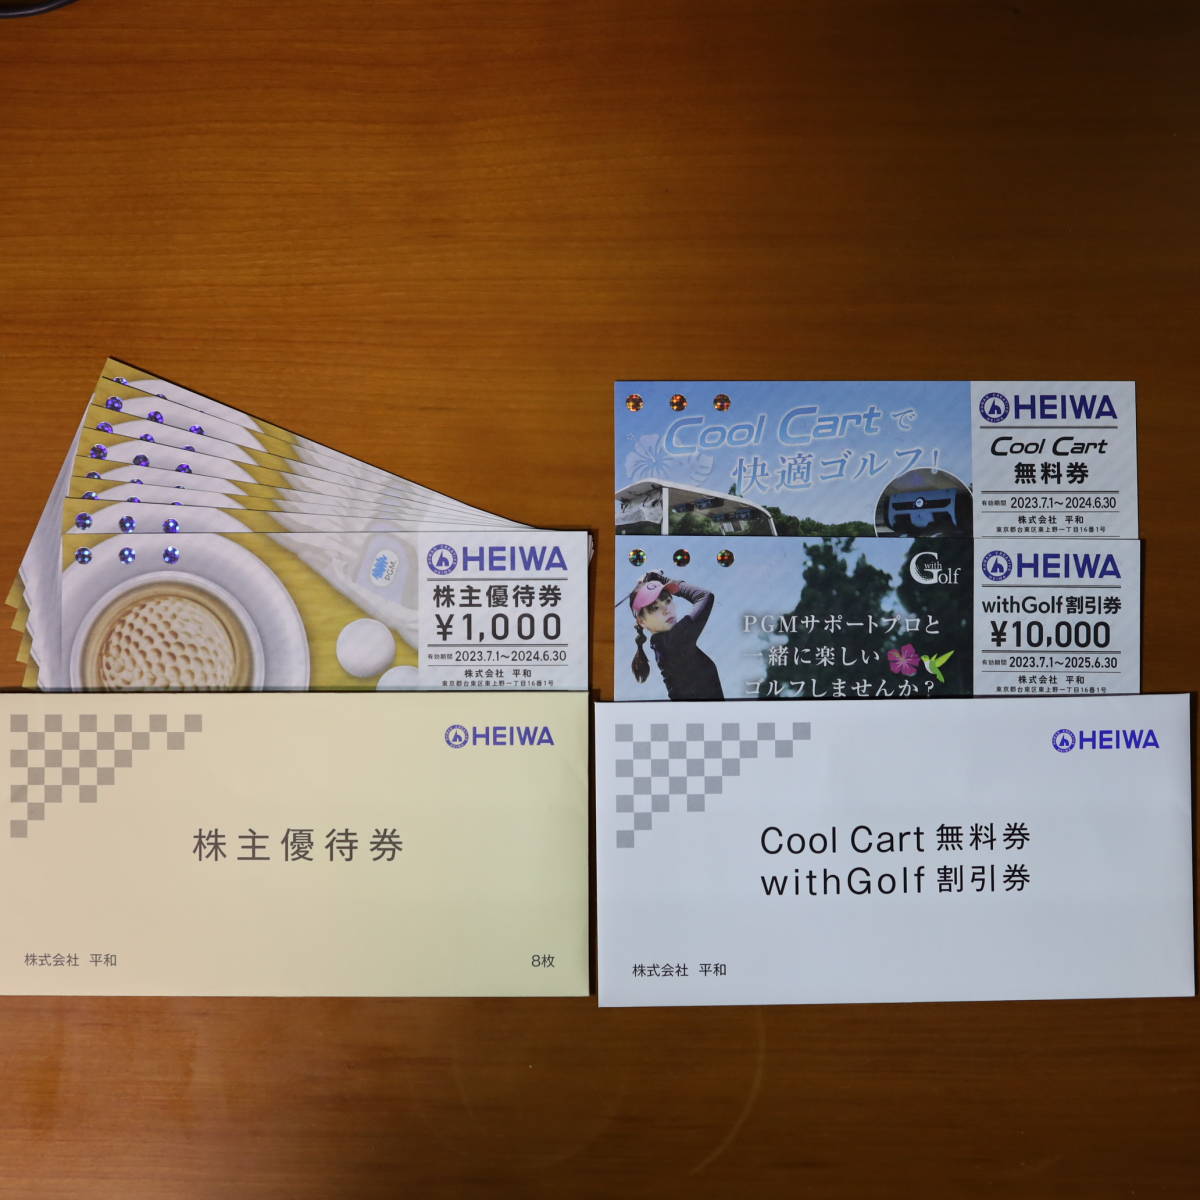 平和 HEIWA 株主優待券 8枚 8000円分+CoolCart無料券 1枚+withGolf割引